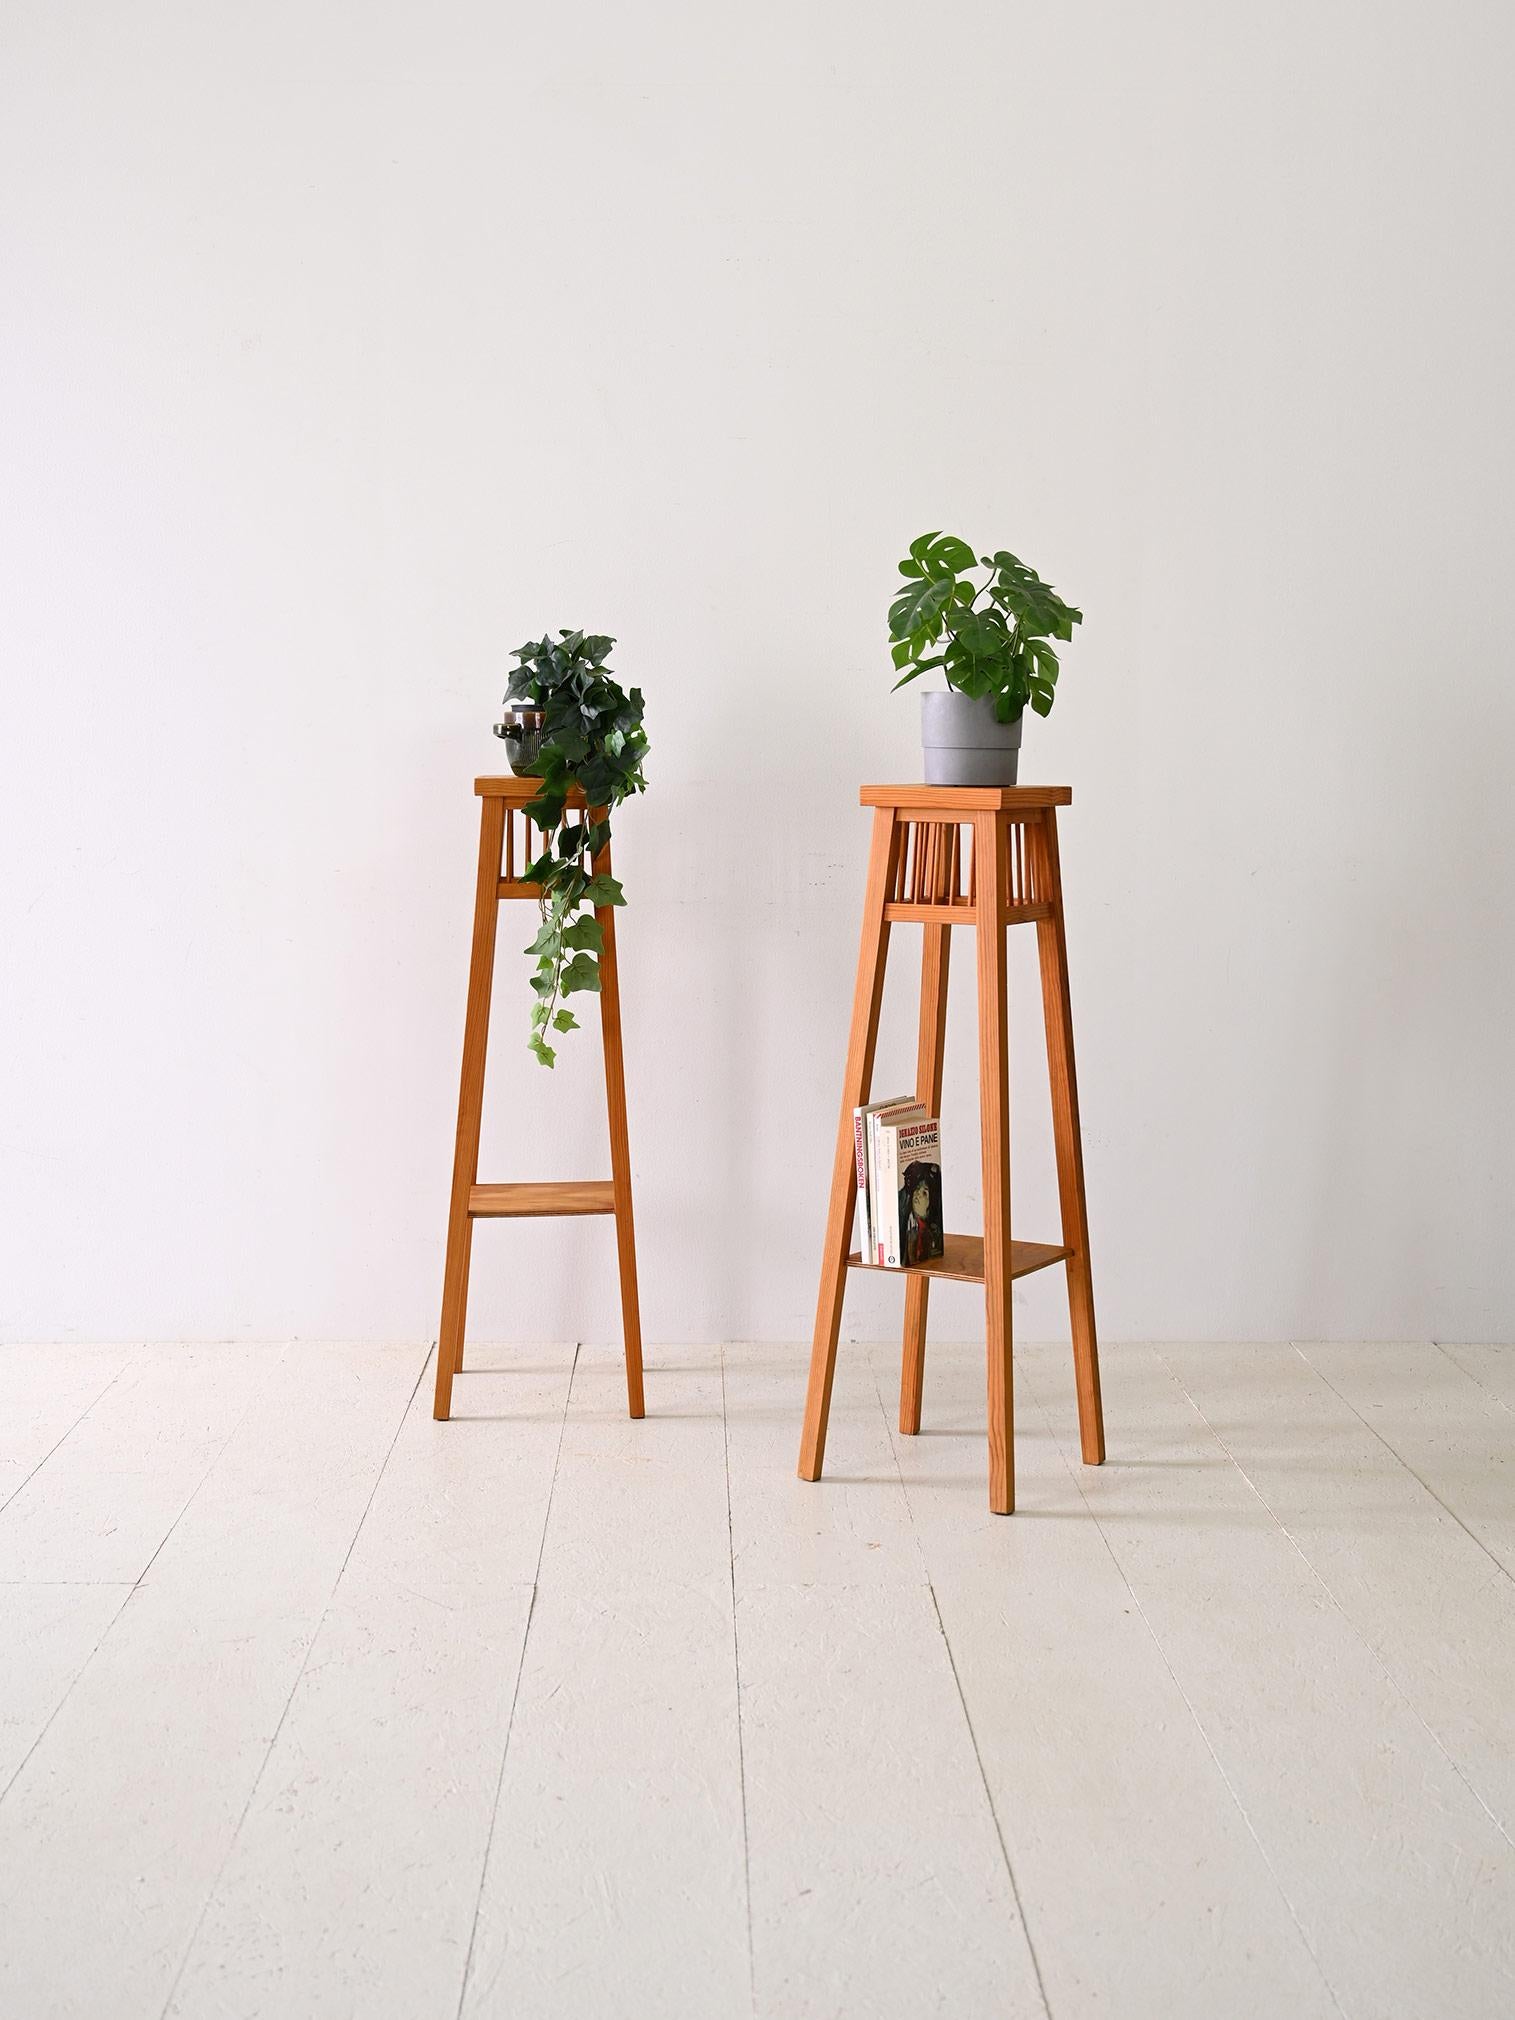 Zwei originelle Blumenhalter aus Holz aus den 1940er Jahren.

Dieses Paar Blumenhalter aus Holz ist eine charmante Ergänzung für jeden Raum. 

Mit seinen kompakten Abmessungen passt er in jede Umgebung und verleiht ihr einen Hauch von Eleganz, ohne